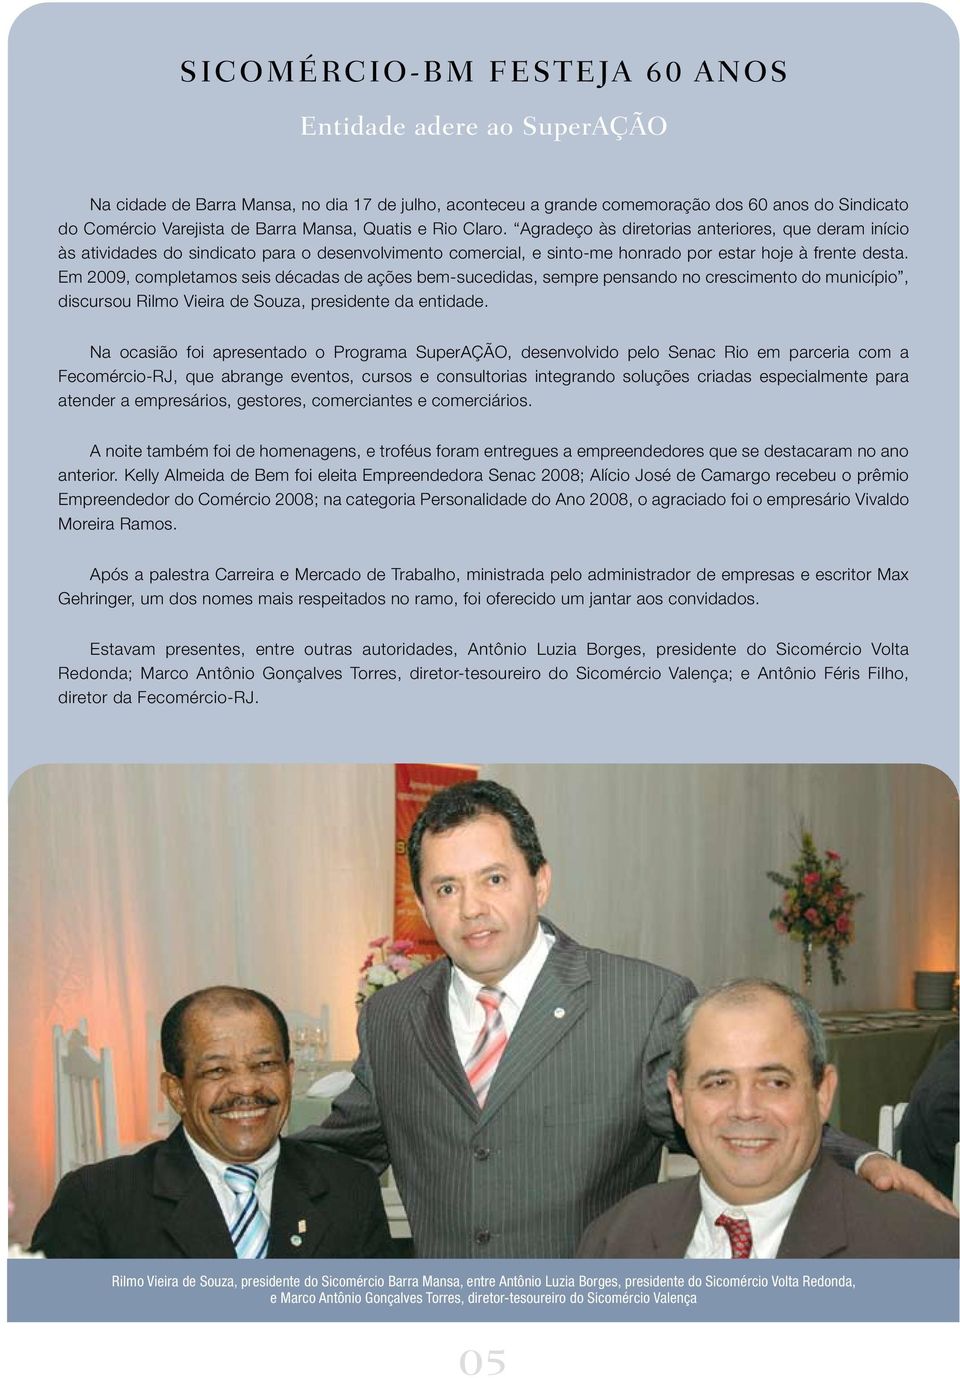 Em 2009, completamos seis décadas de ações bem-sucedidas, sempre pensando no crescimento do município, discursou Rilmo Vieira de Souza, presidente da entidade.